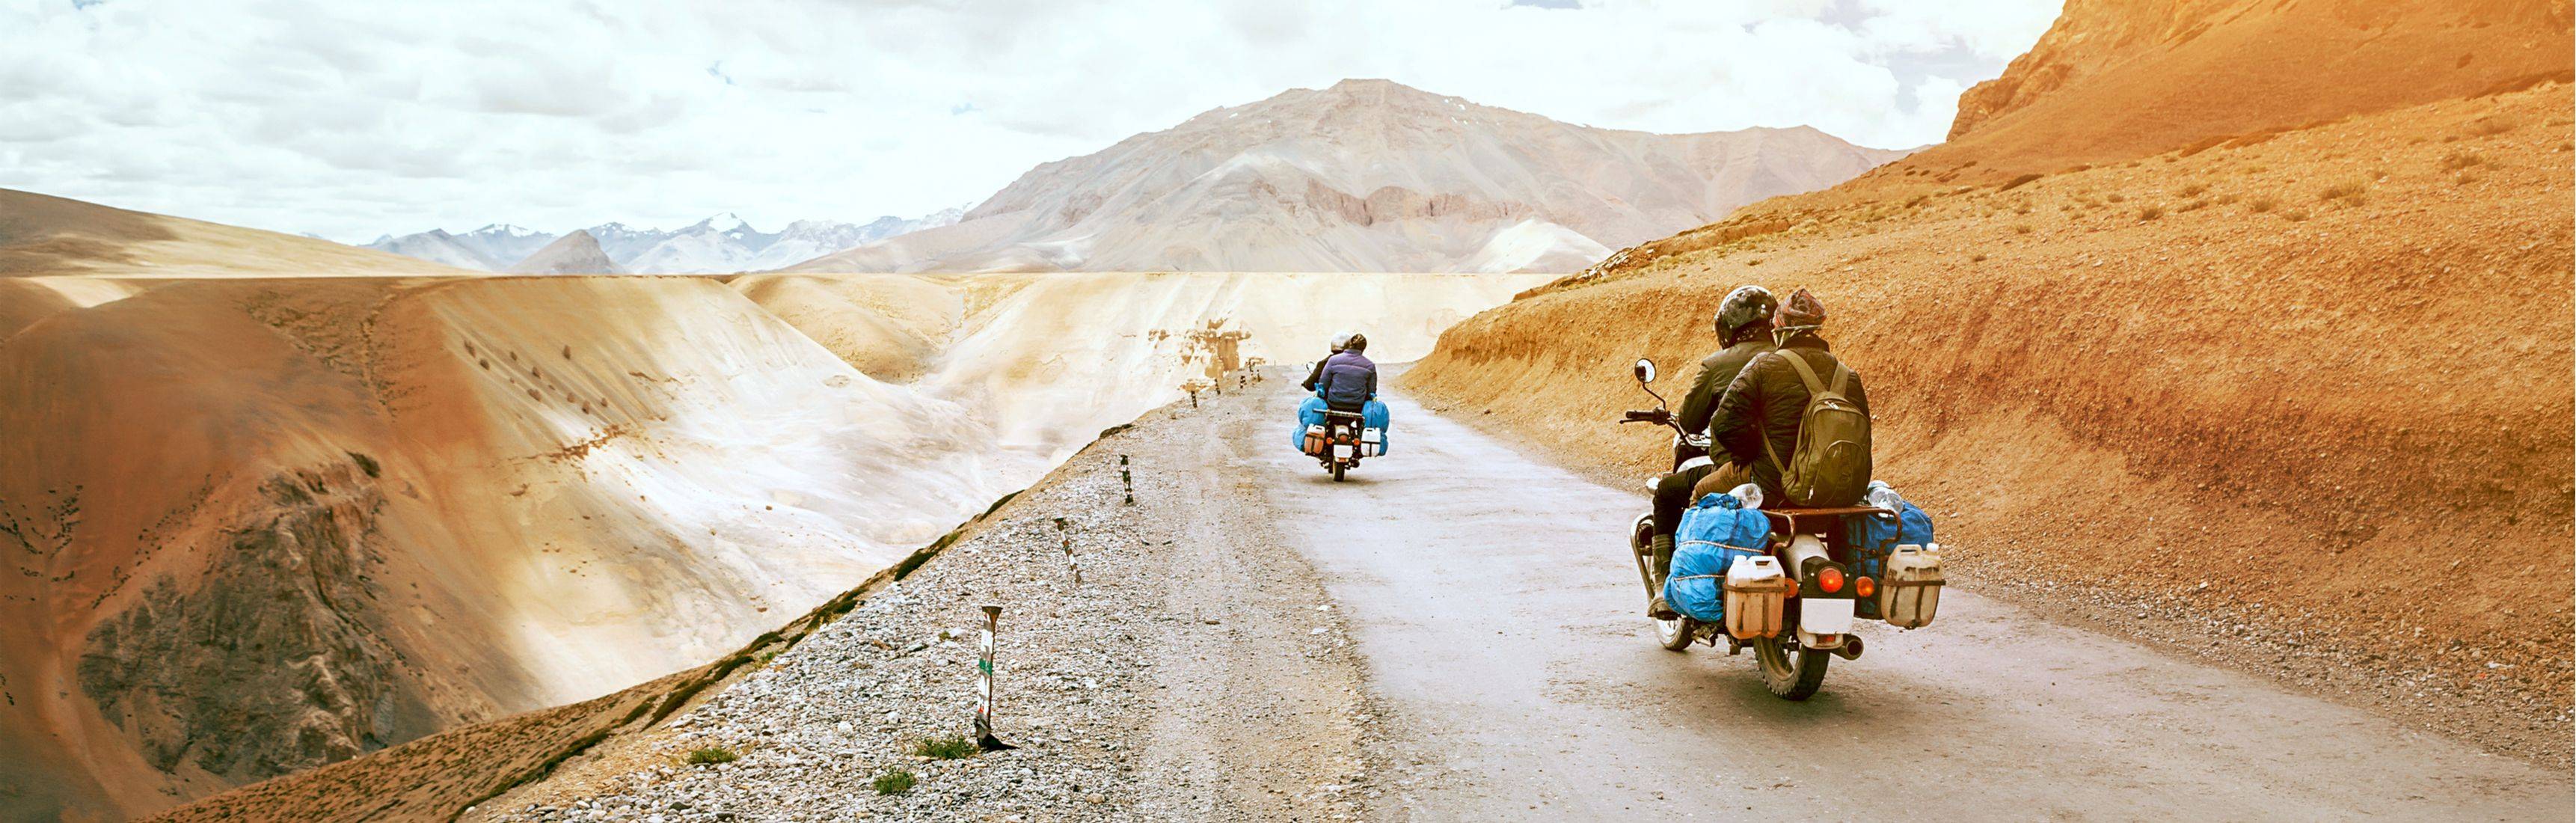 Viaggio in moto a Ladakh attraverso Himalaya e Punjab